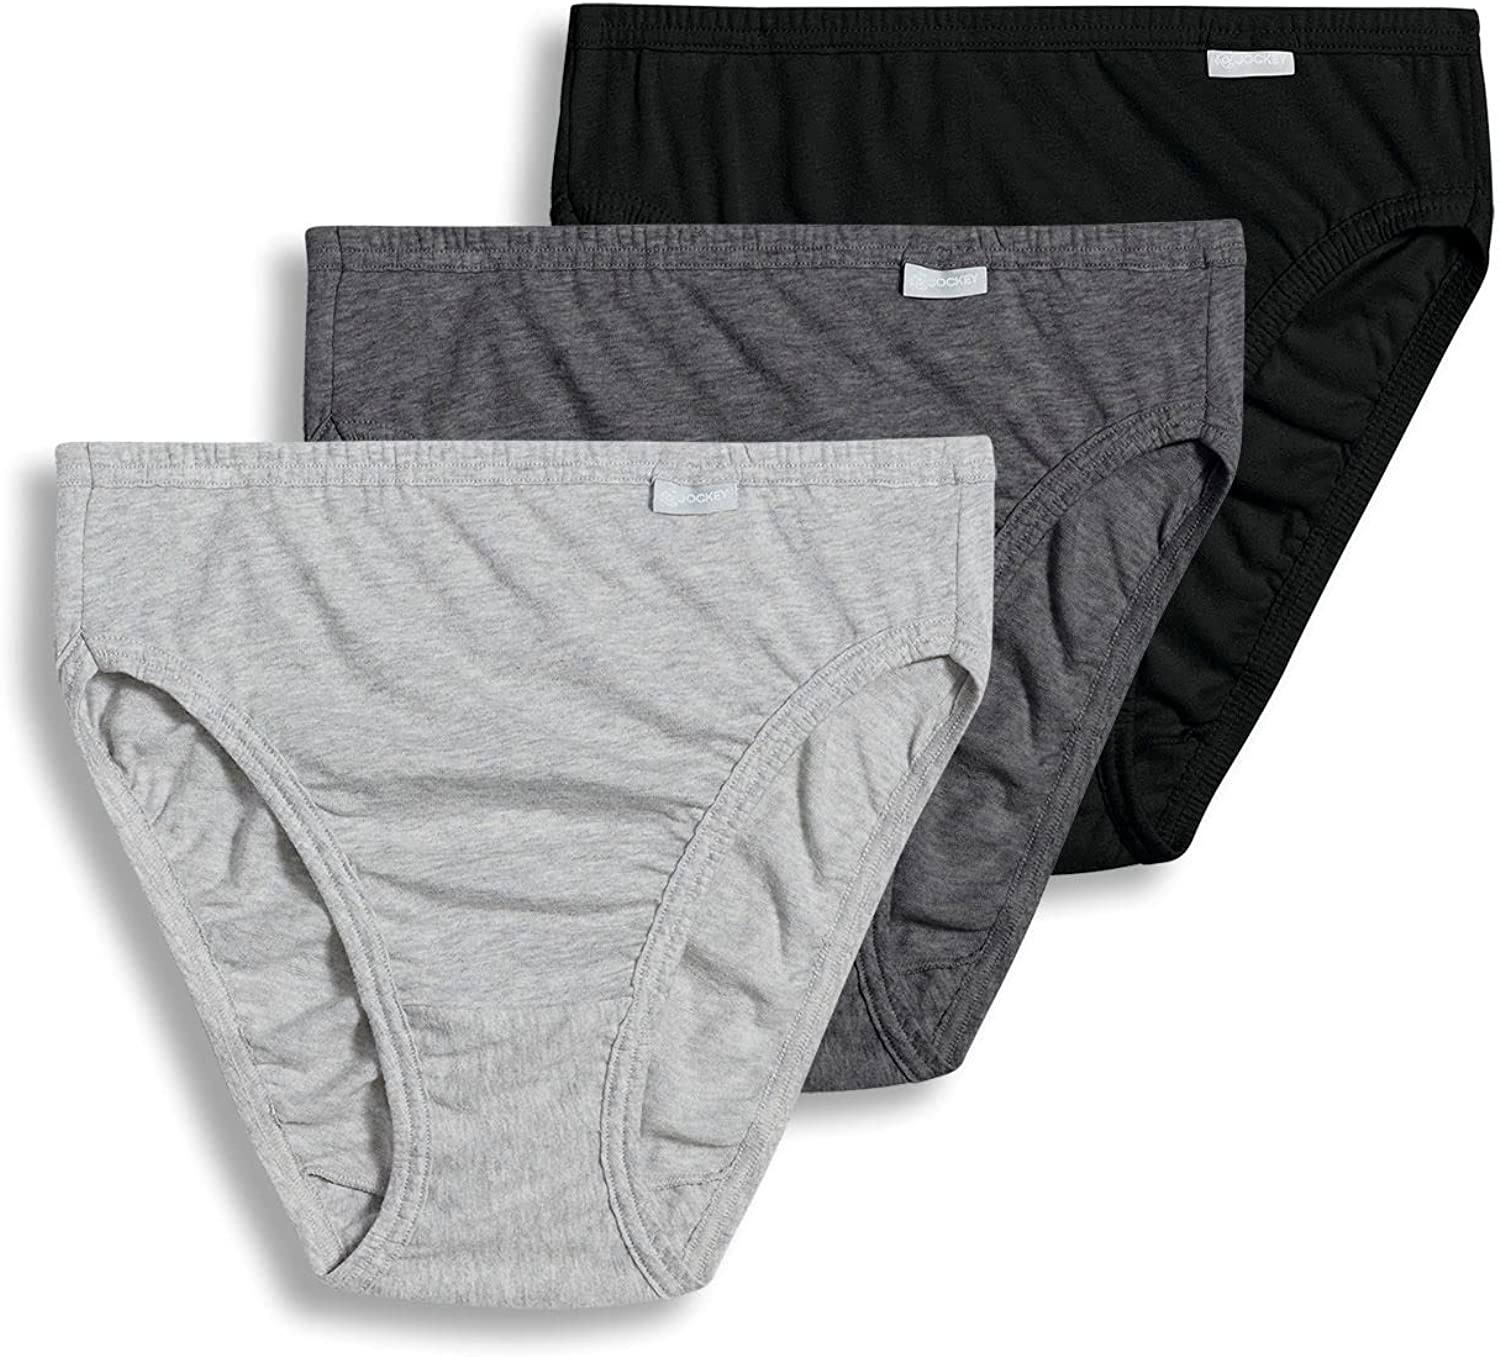 Jockey Women's Underwear Plus Size Elance French Cut - 3 Pack